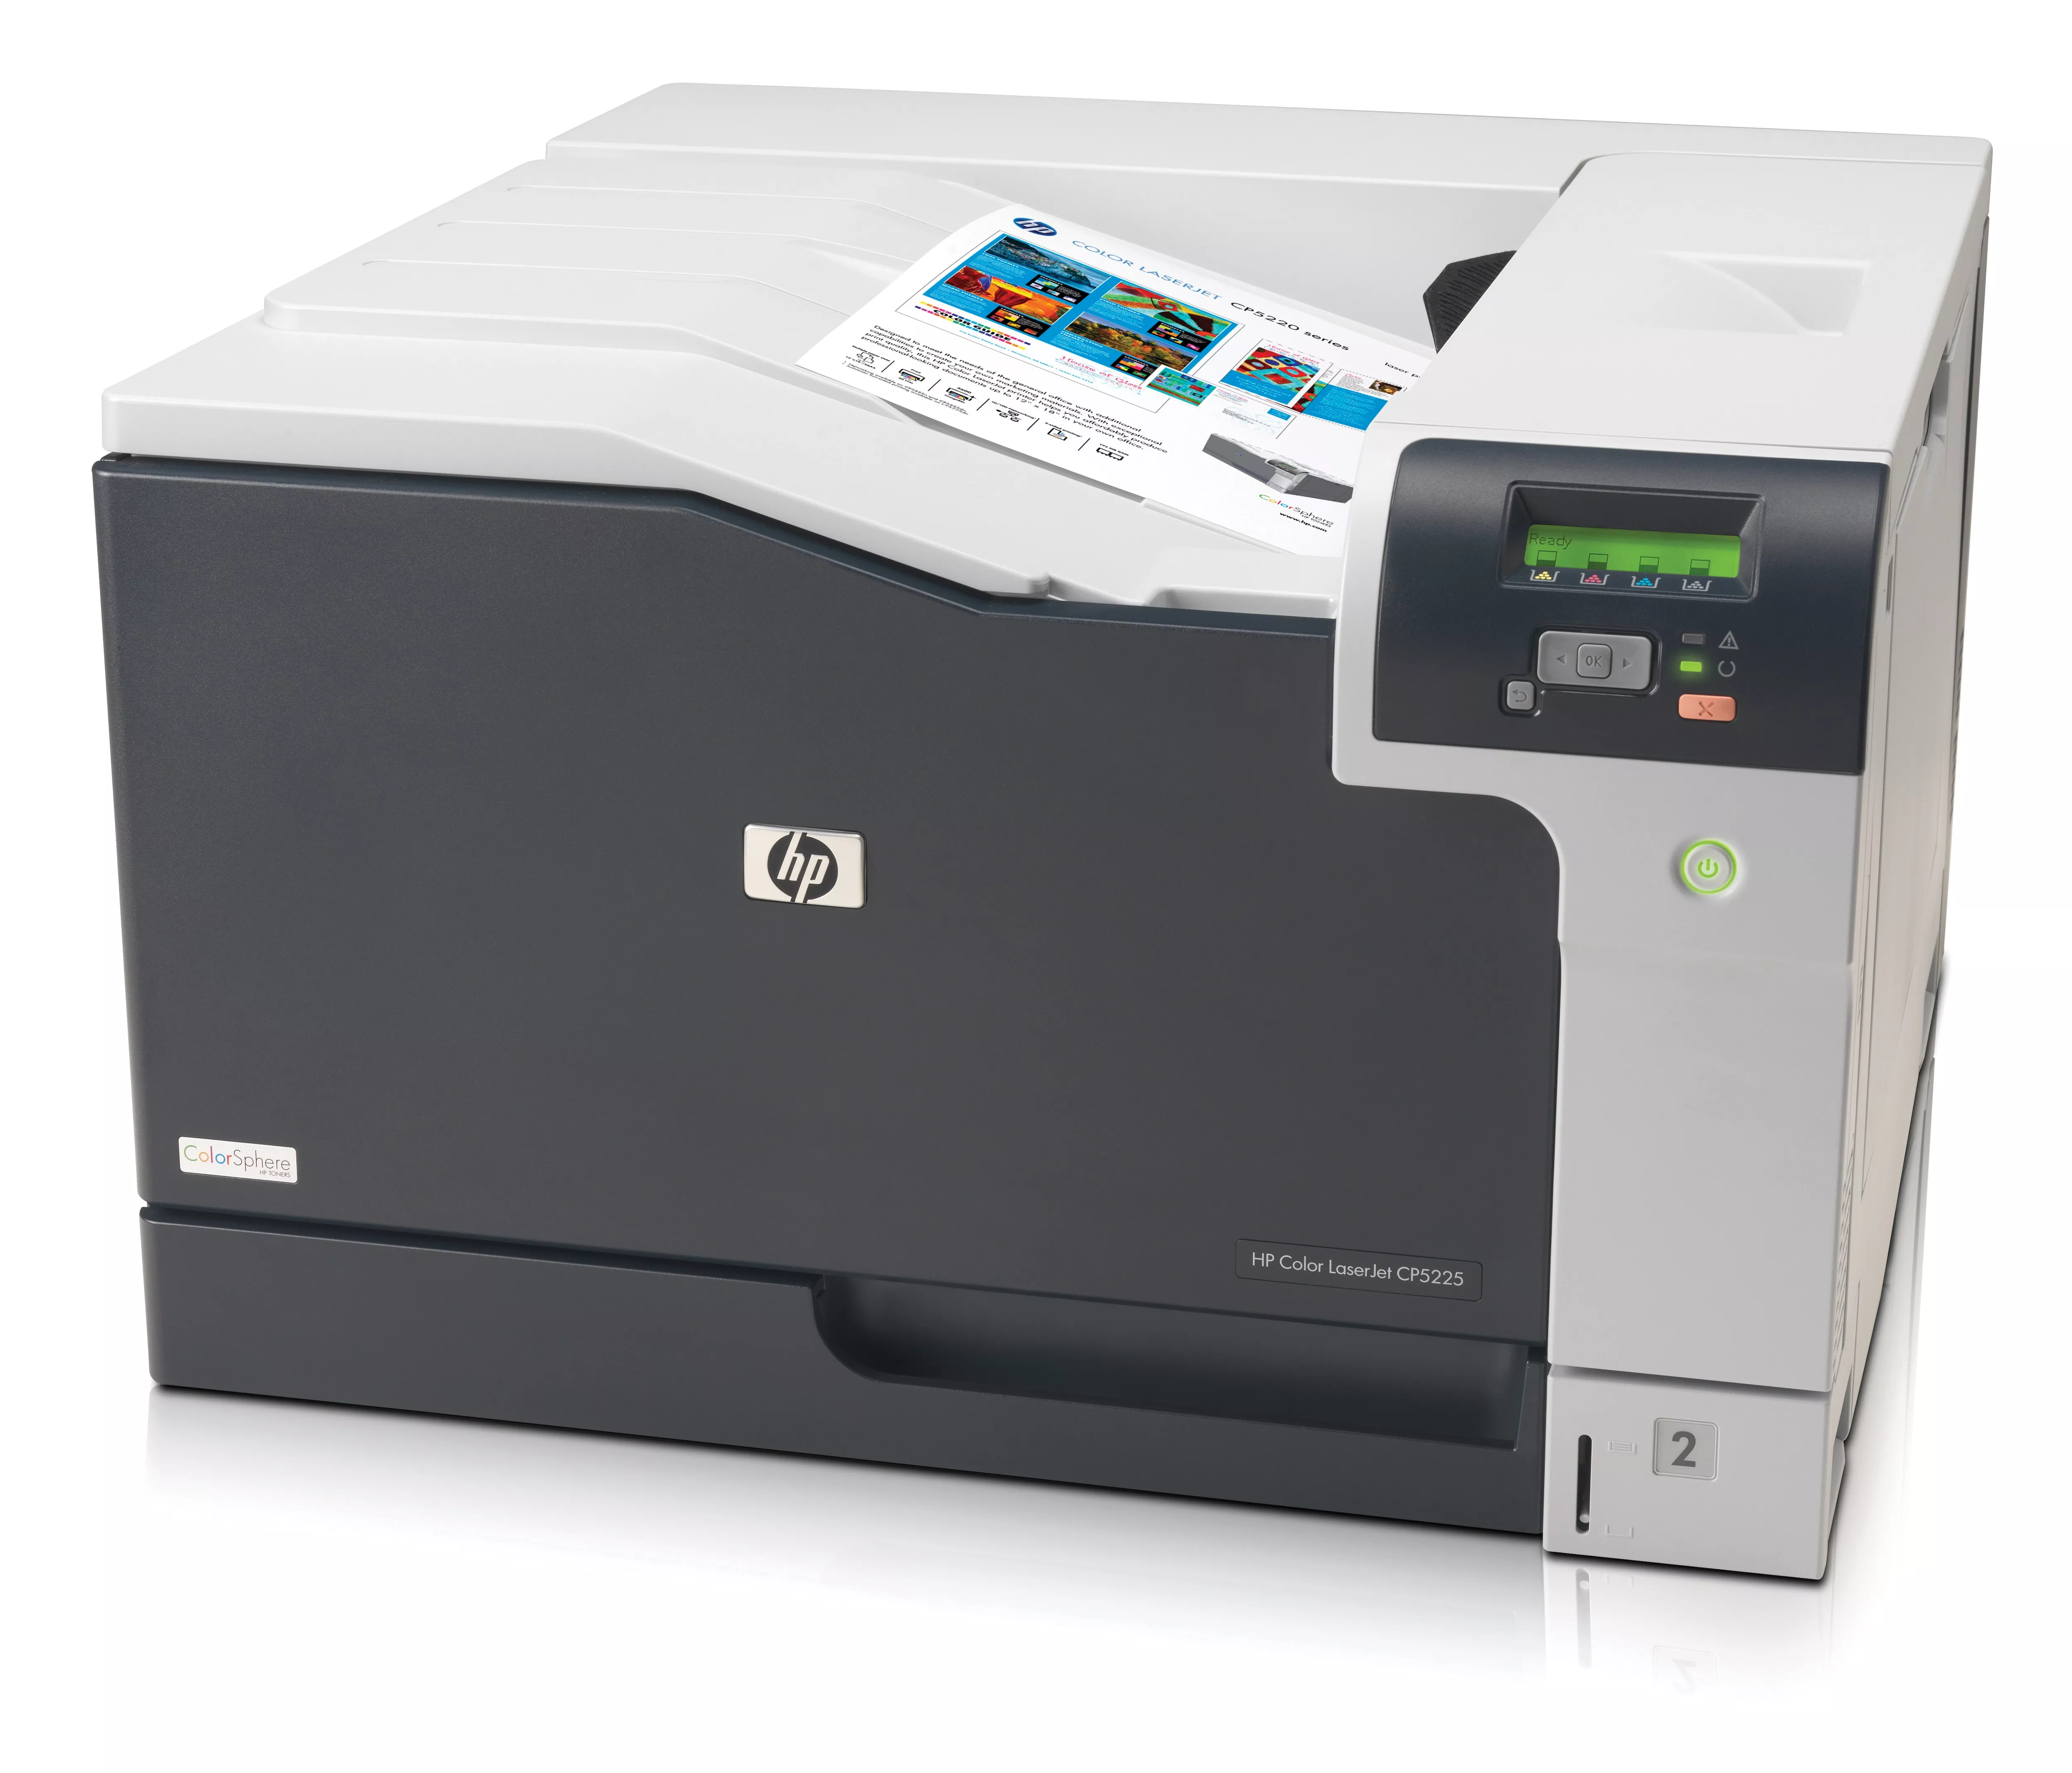 Vente HP Color LaserJet CP5225 HP au meilleur prix - visuel 4